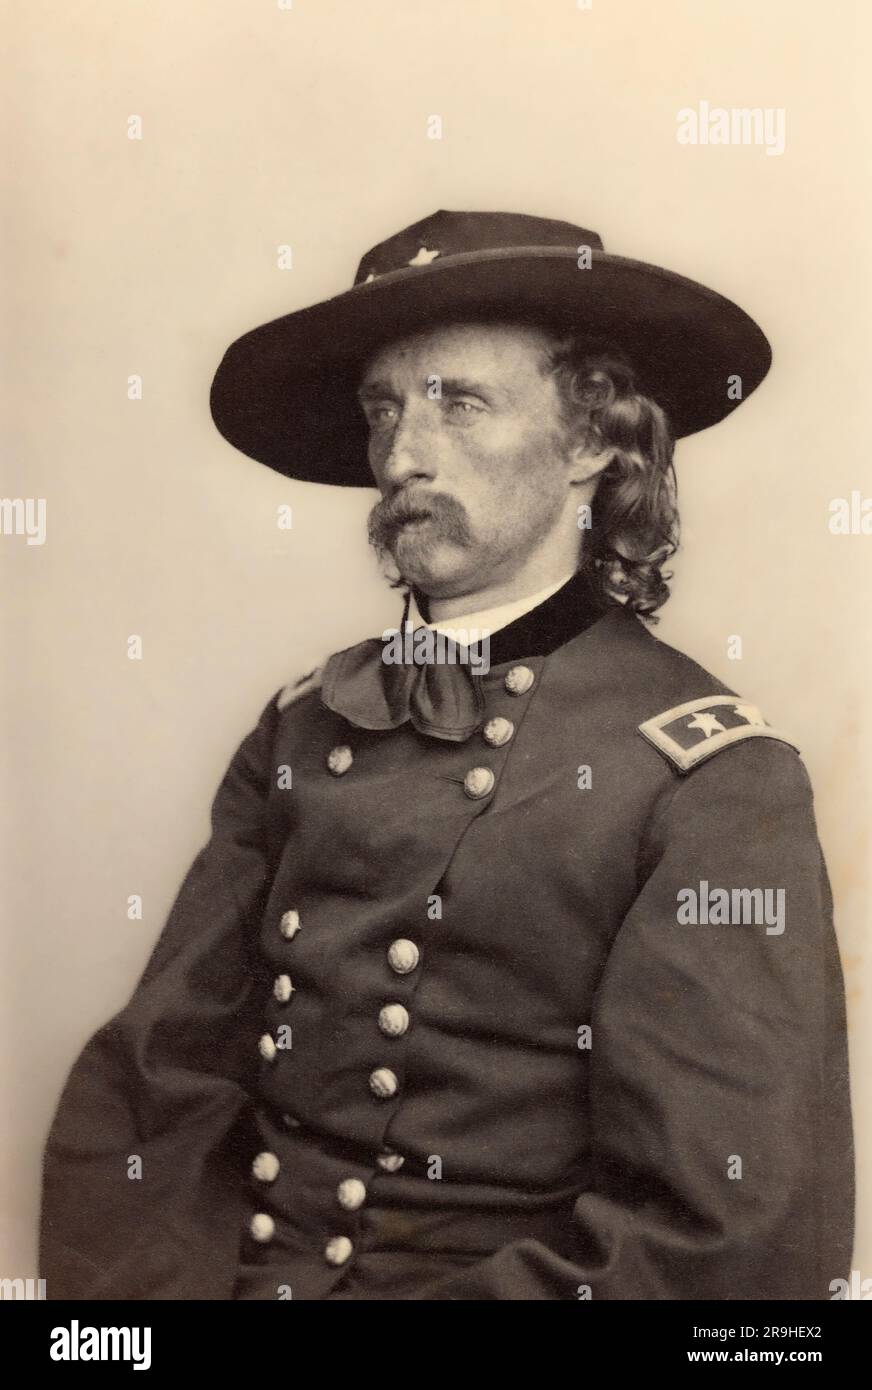 George Armstrong Custer, 1839-1876. Offizier und Kavallerieführer der US-Armee im Amerikanischen Bürgerkrieg und in den Amerikanischen Indianerkriegen, der zusammen mit einem Großteil seines Kommandos in der Schlacht am Little Bighorn getötet wurde. Stockfoto